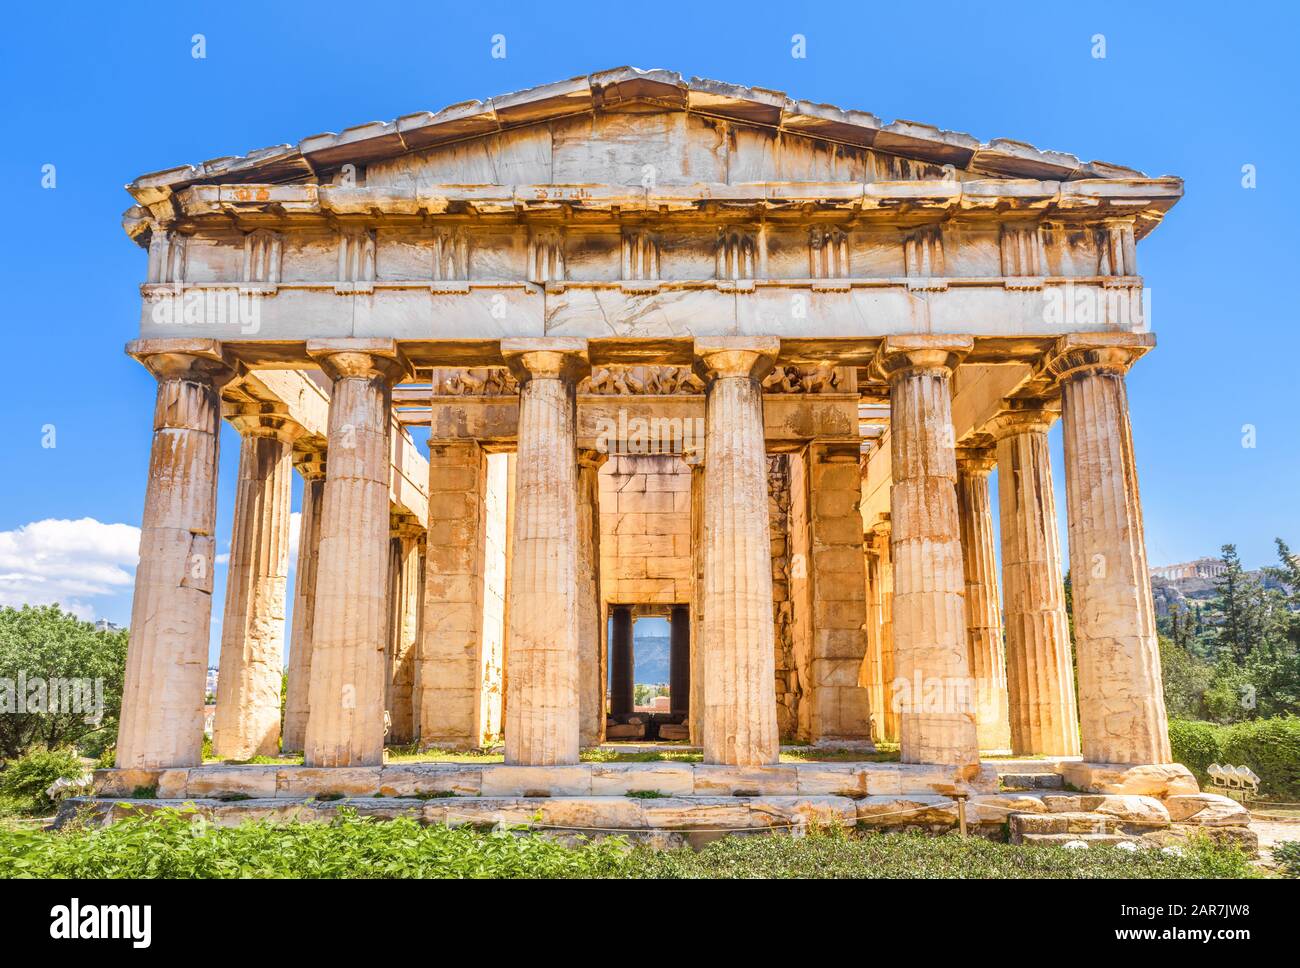 Tempel des Hephaestus im Antiken Agora, Athen, Griechenland. Es ist eines der wichtigsten Wahrzeichen Athens. Sonniger Blick auf den klassischen griechischen Tempel in Athen Stockfoto